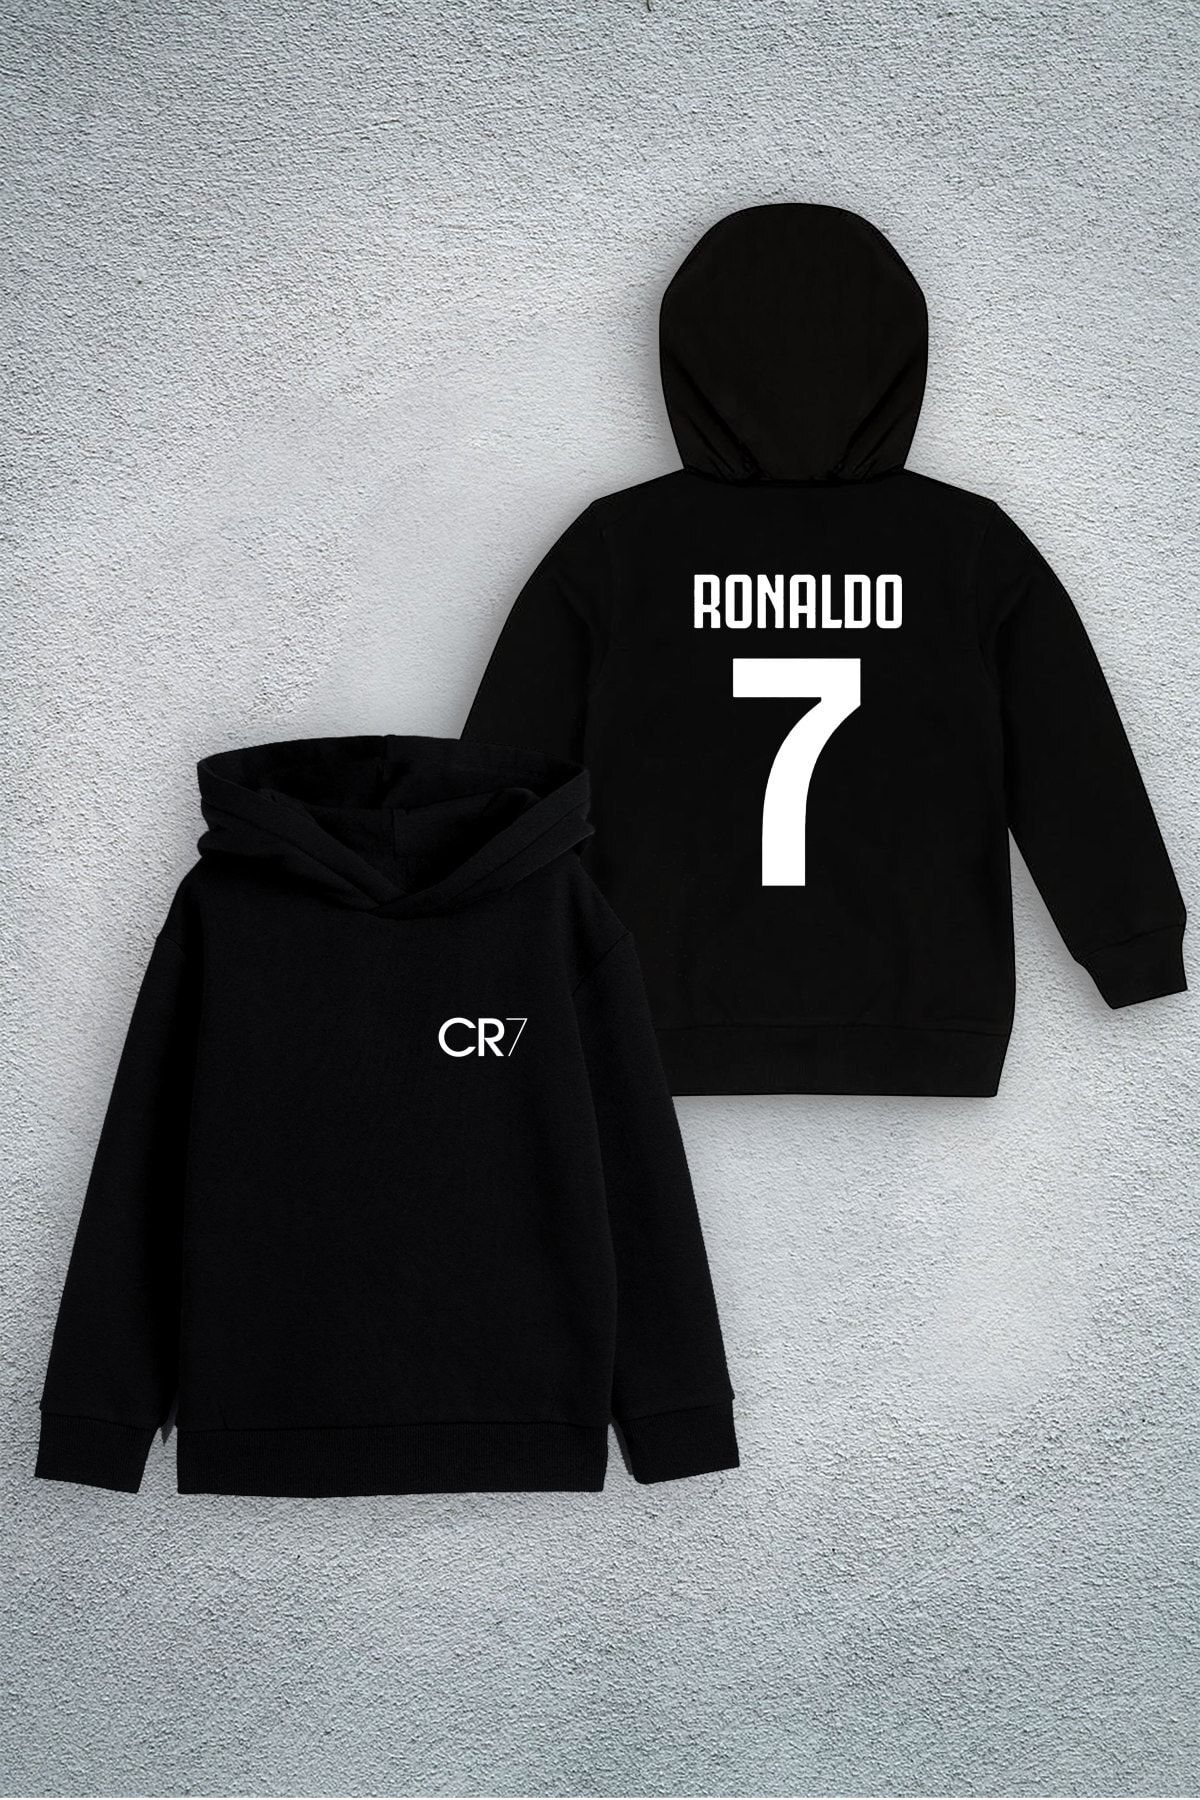 Darkia Cristiano Ronaldo Cr7 Forma Özel Tasarım Baskılı Çocuk Kapşonlu Sweatshirt Hoodie